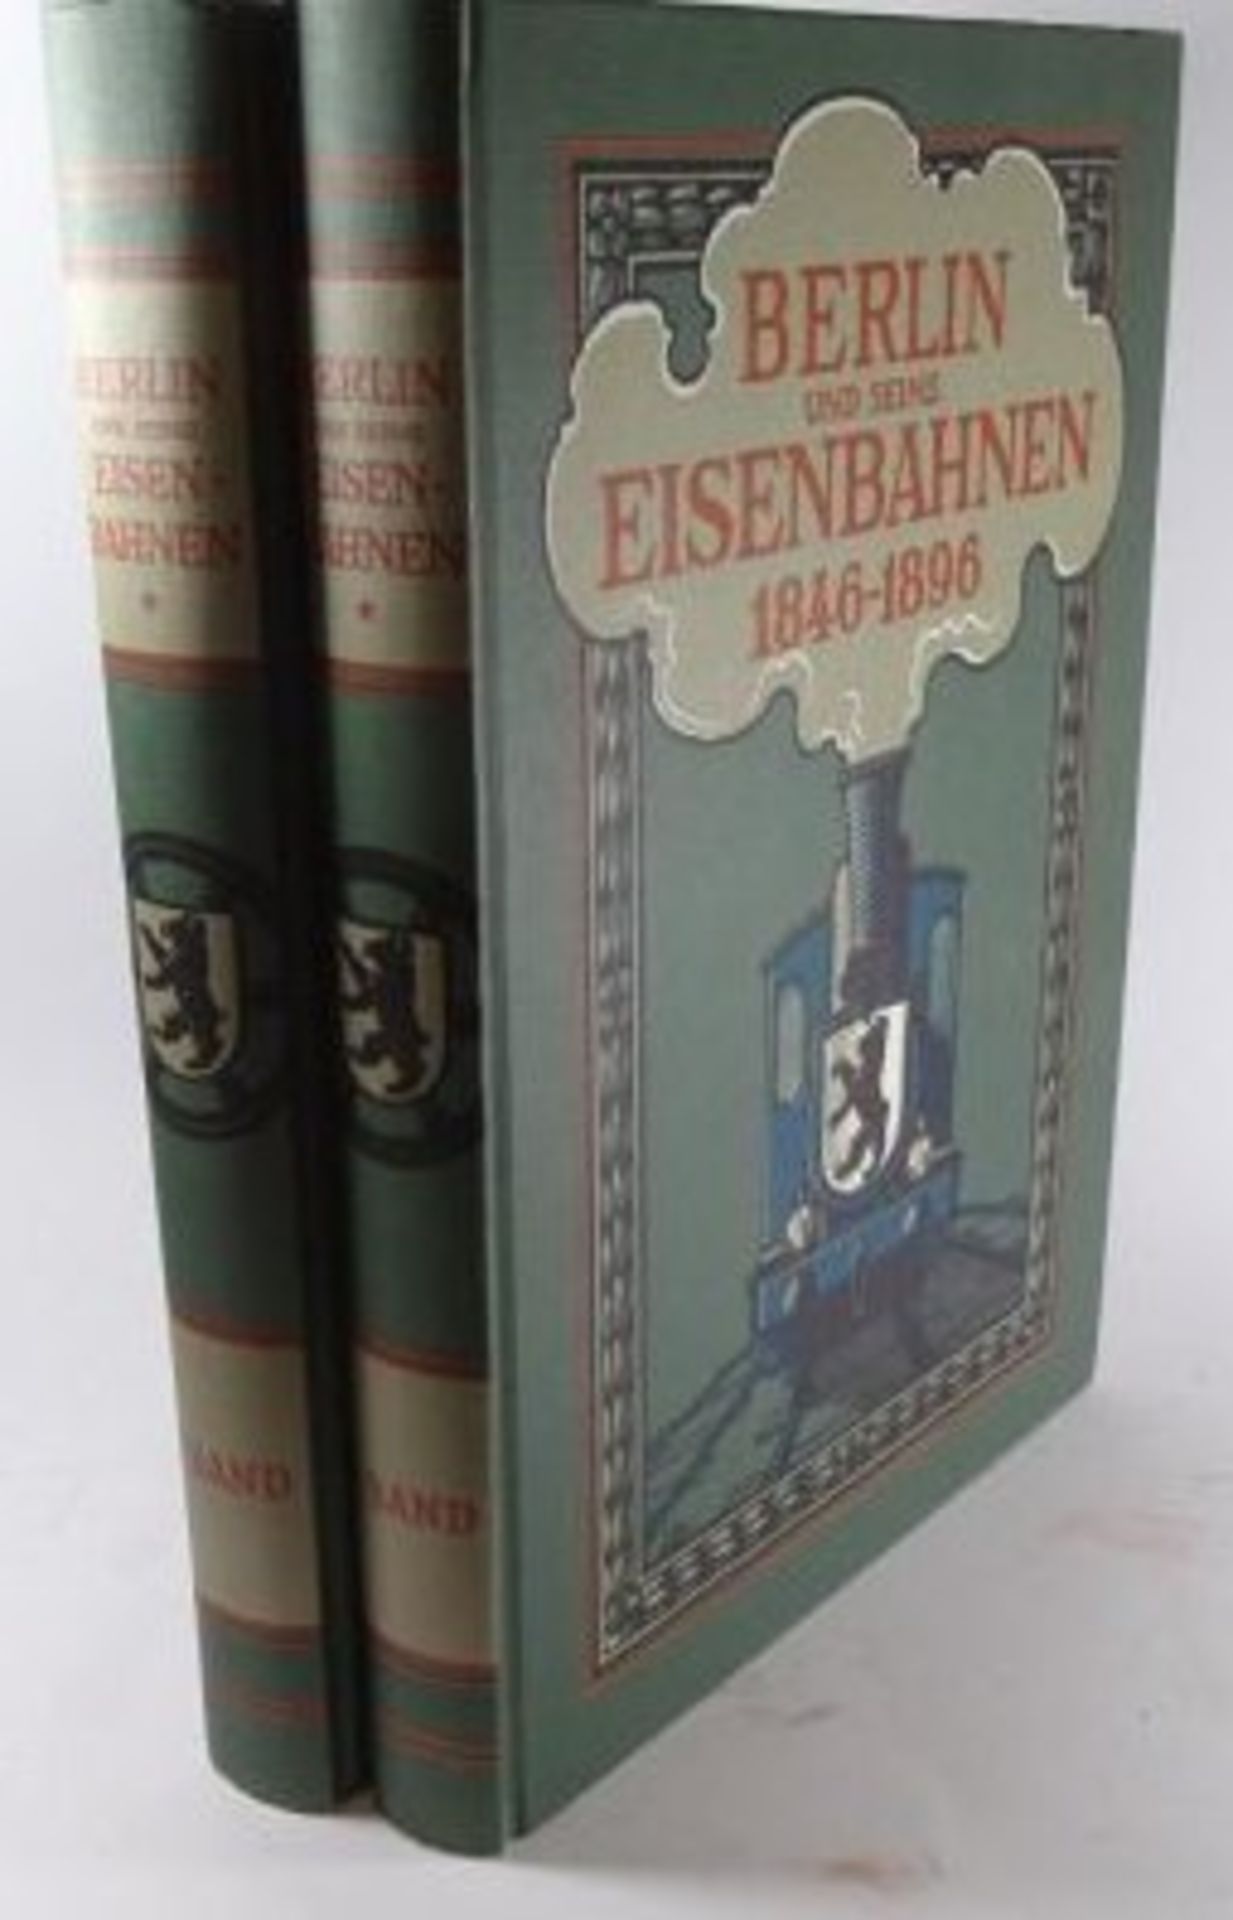 2 Bände "Berlin und seine Eisenbahnen" , 1982 Reprint von 1896, neuwertig, 31,5x24 c